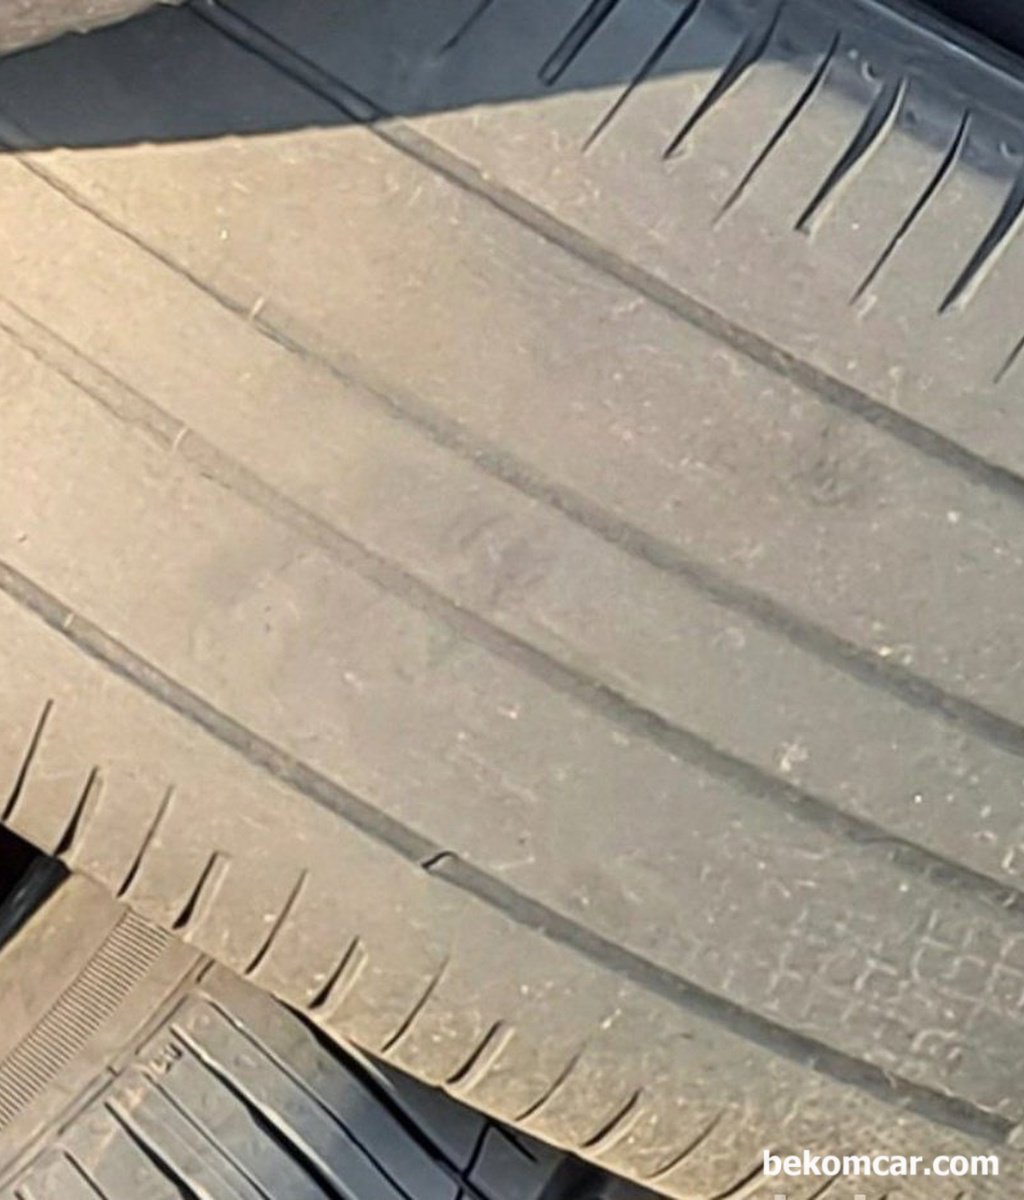 타이어 편마모가 이상하게 계단처럼 생겼는데 하체나 얼라인먼트 이상이 있는건가요?|베콤카 (bekomcar.com)